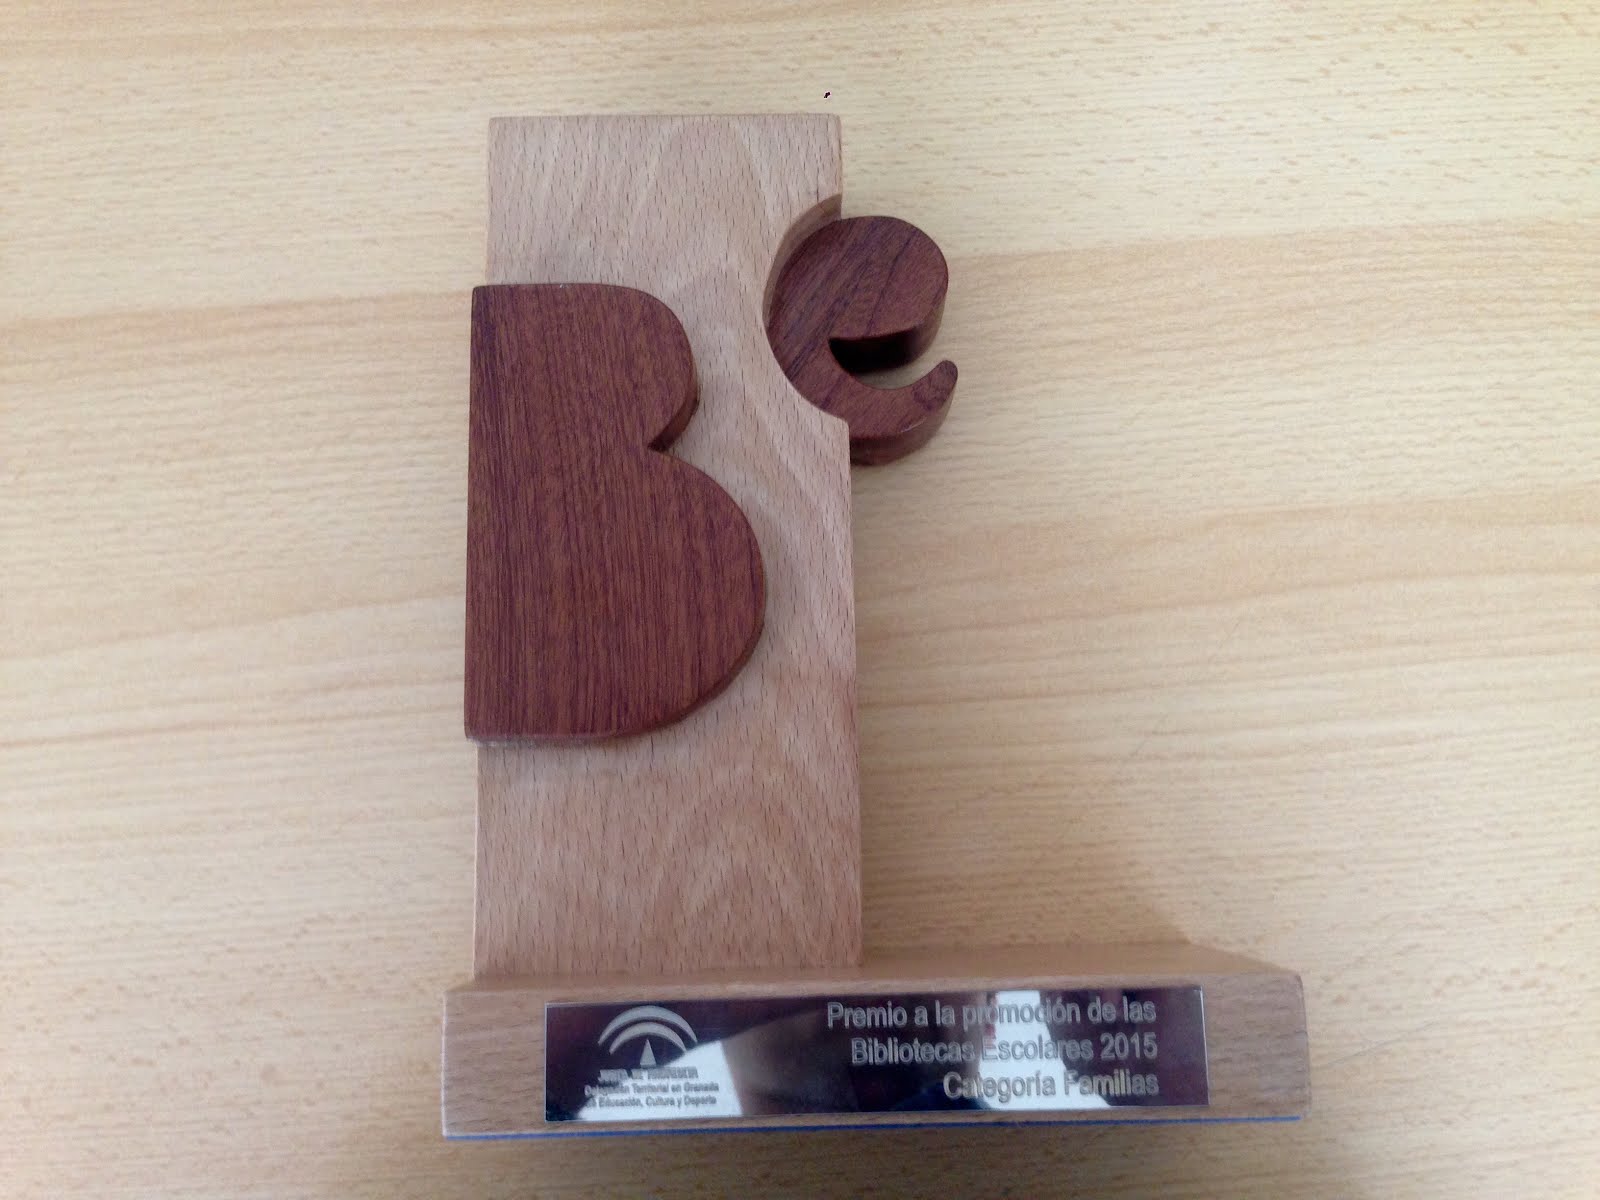 Premio a la promoción de las Bibliotecas Escolares 2015